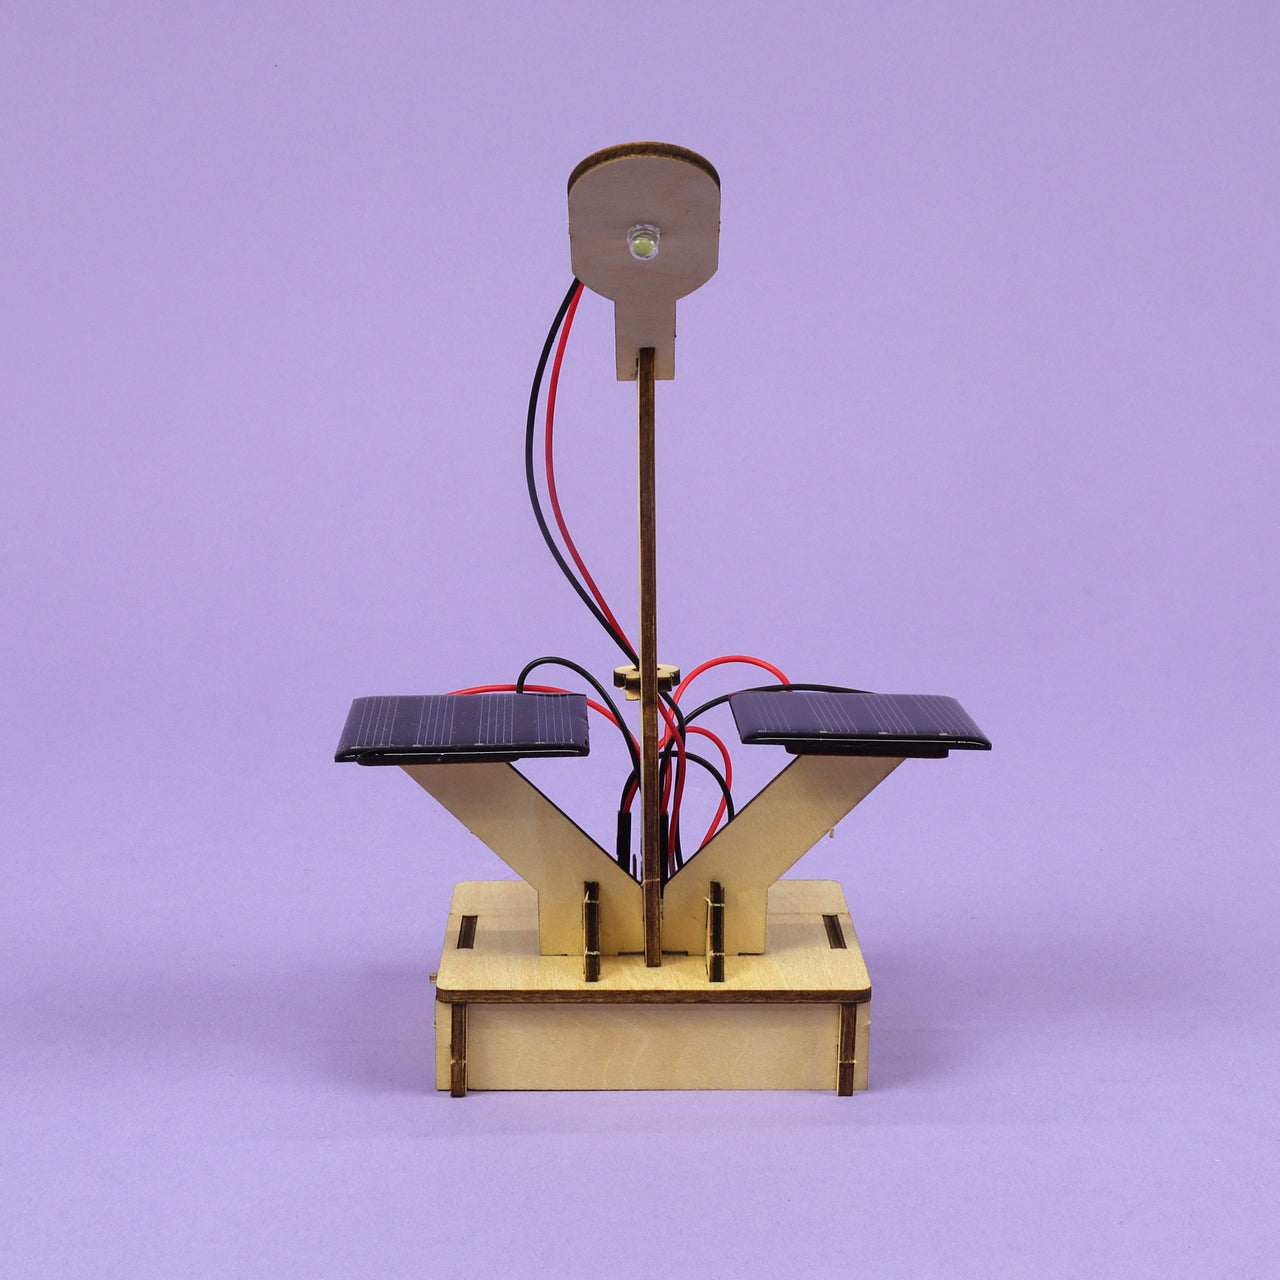 Kit de bricolage de lampe solaire sensible à la lumière intelligente CreateKit